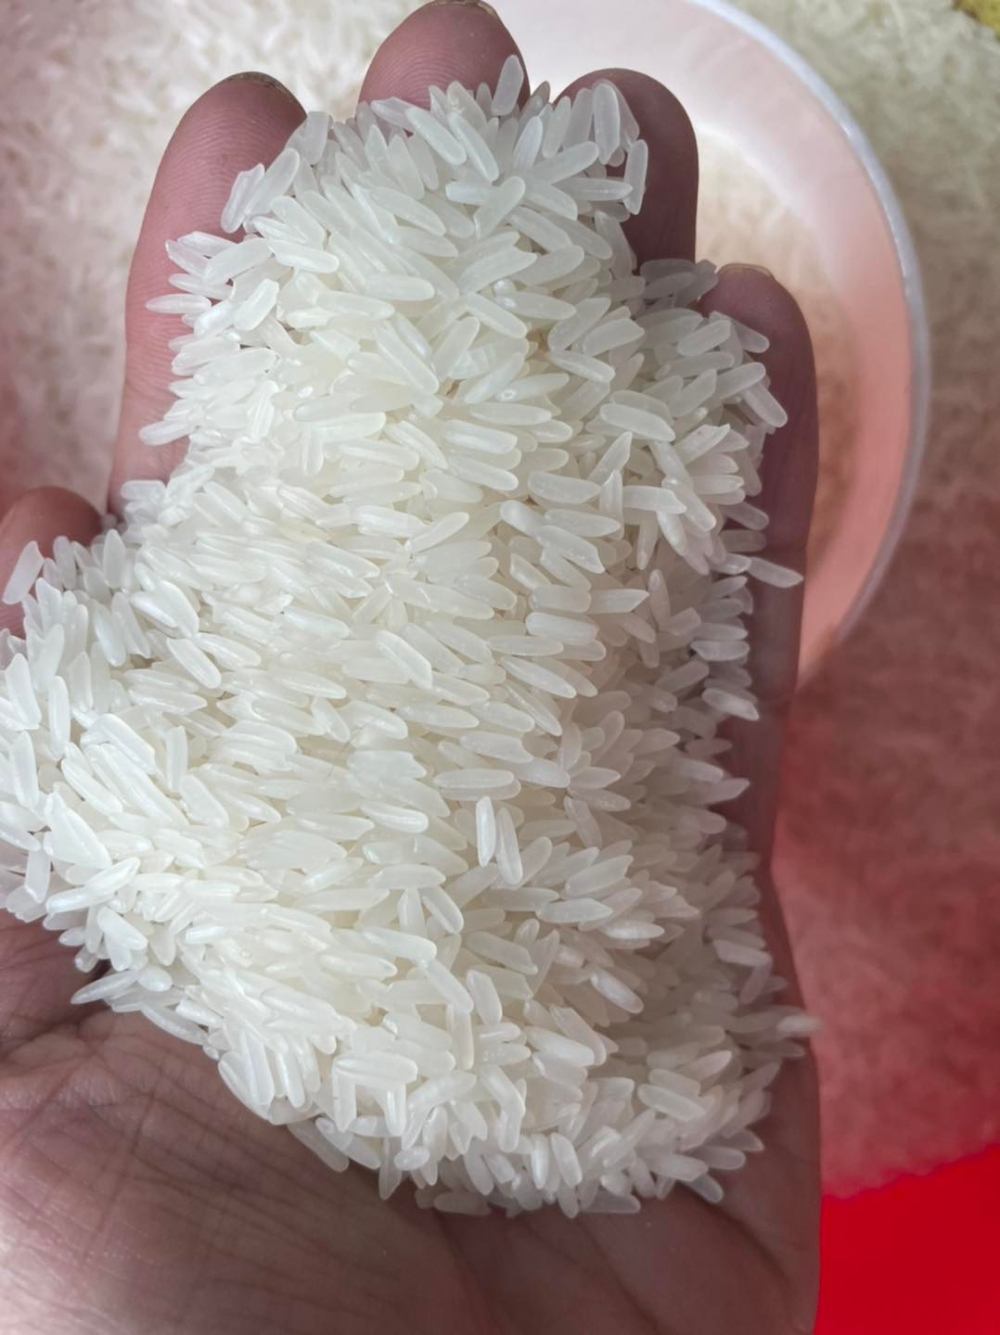 Cần tìm nhà cung cấp gạo tại TPHCM